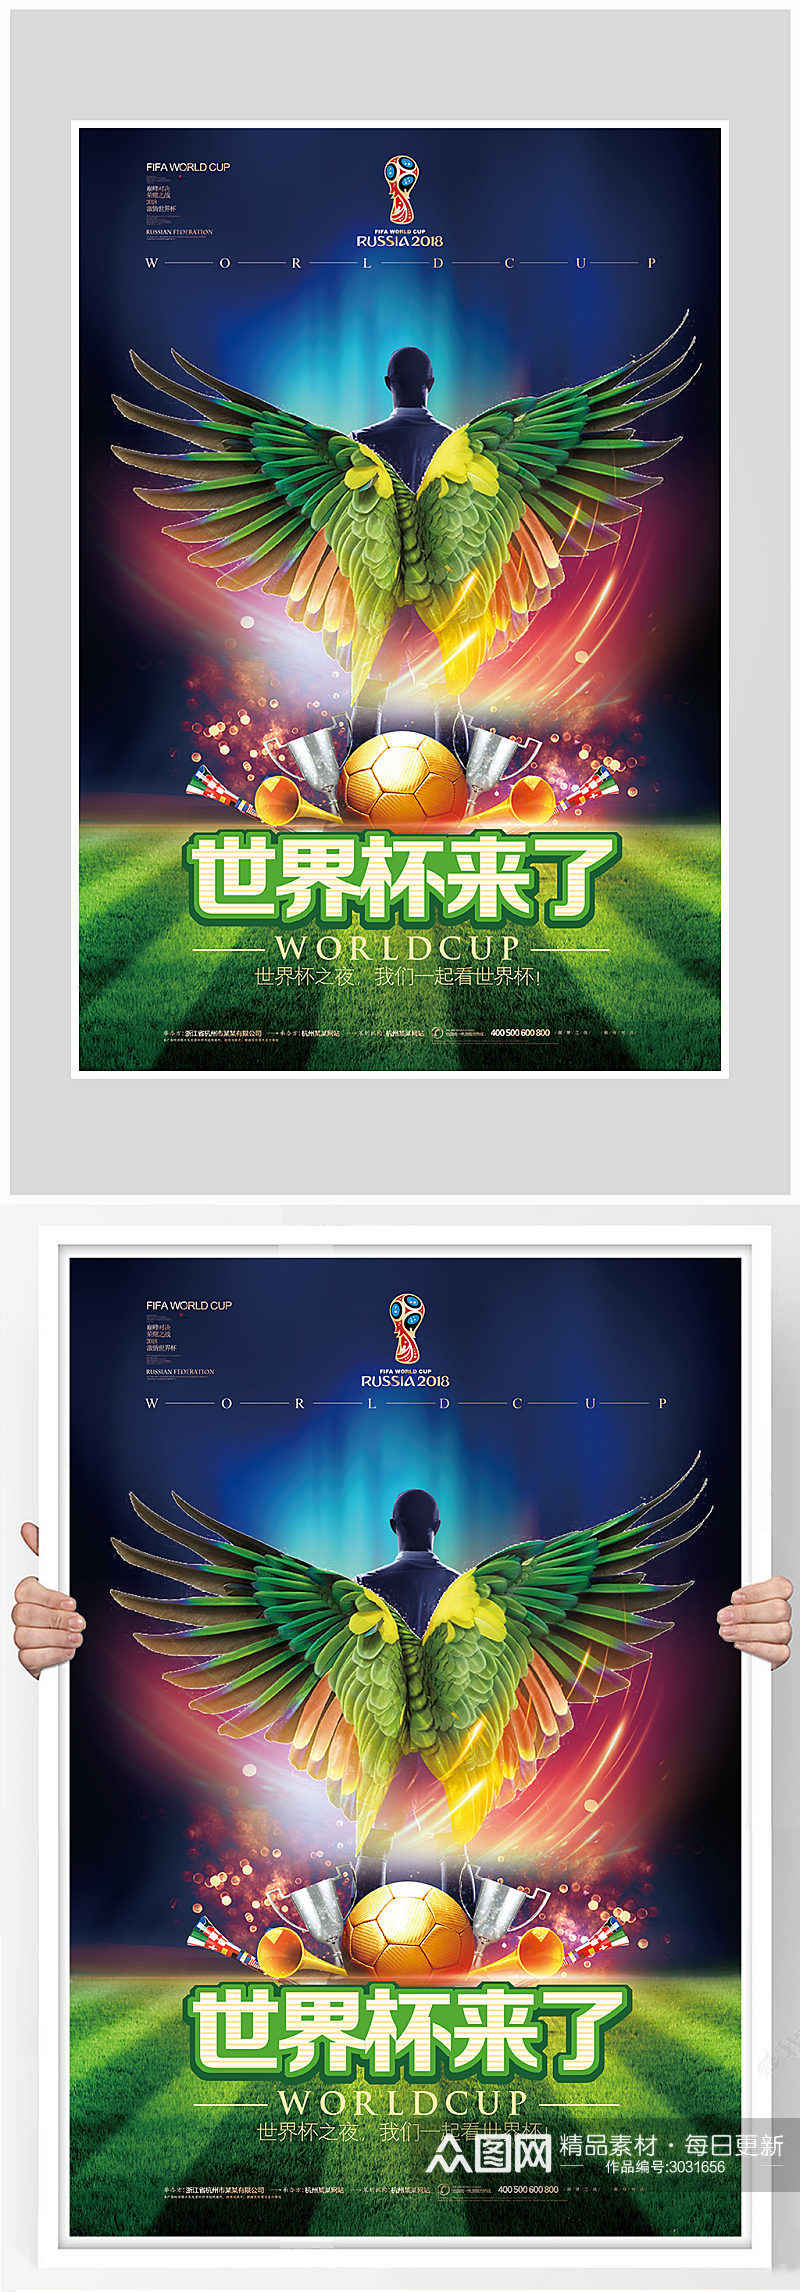 世界杯足球比赛海报设计素材